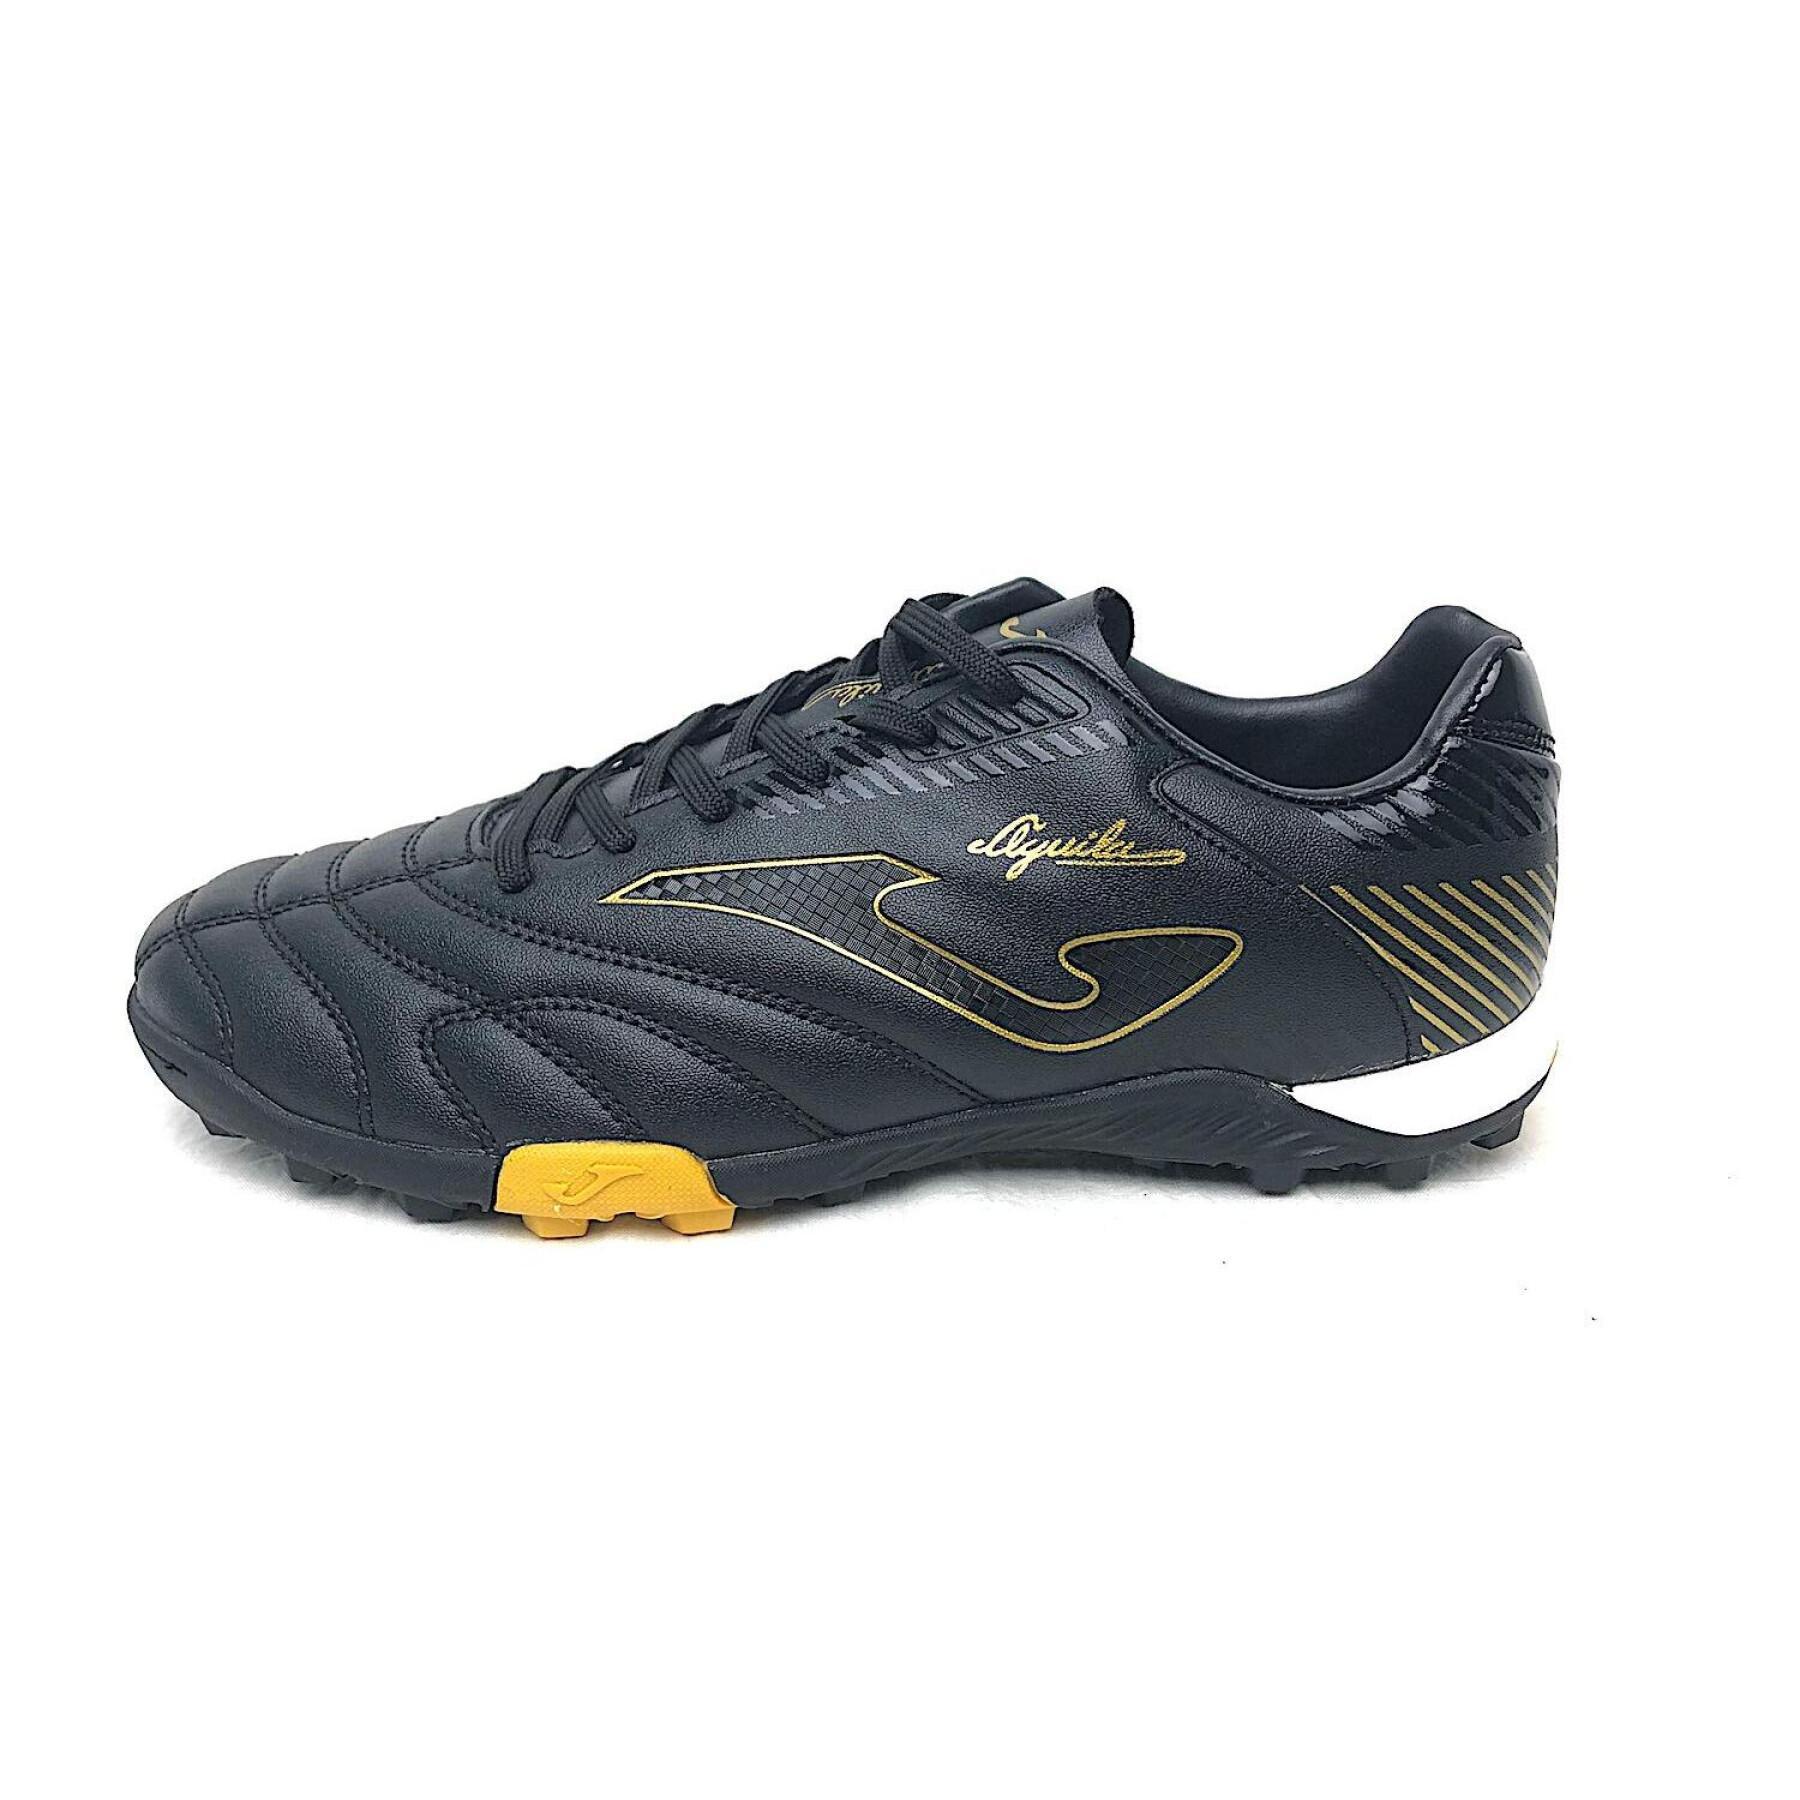 Zapatos Joma Aguila Turf 2001 ORO